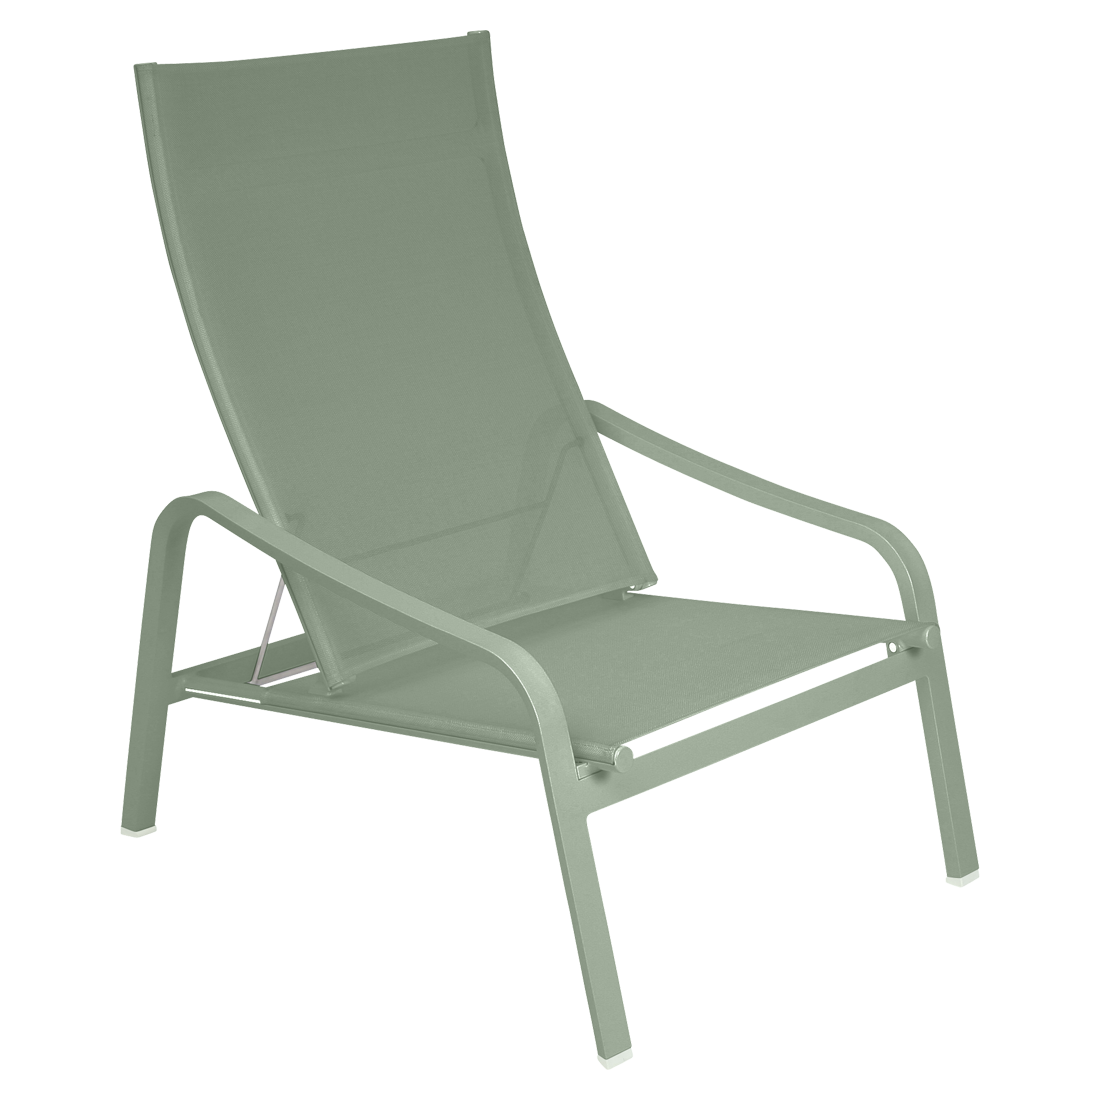 fauteuil de jardin, fauteuil fermob, fauteuil piscine, fauteuil en toile, fauteuil de jardin vert